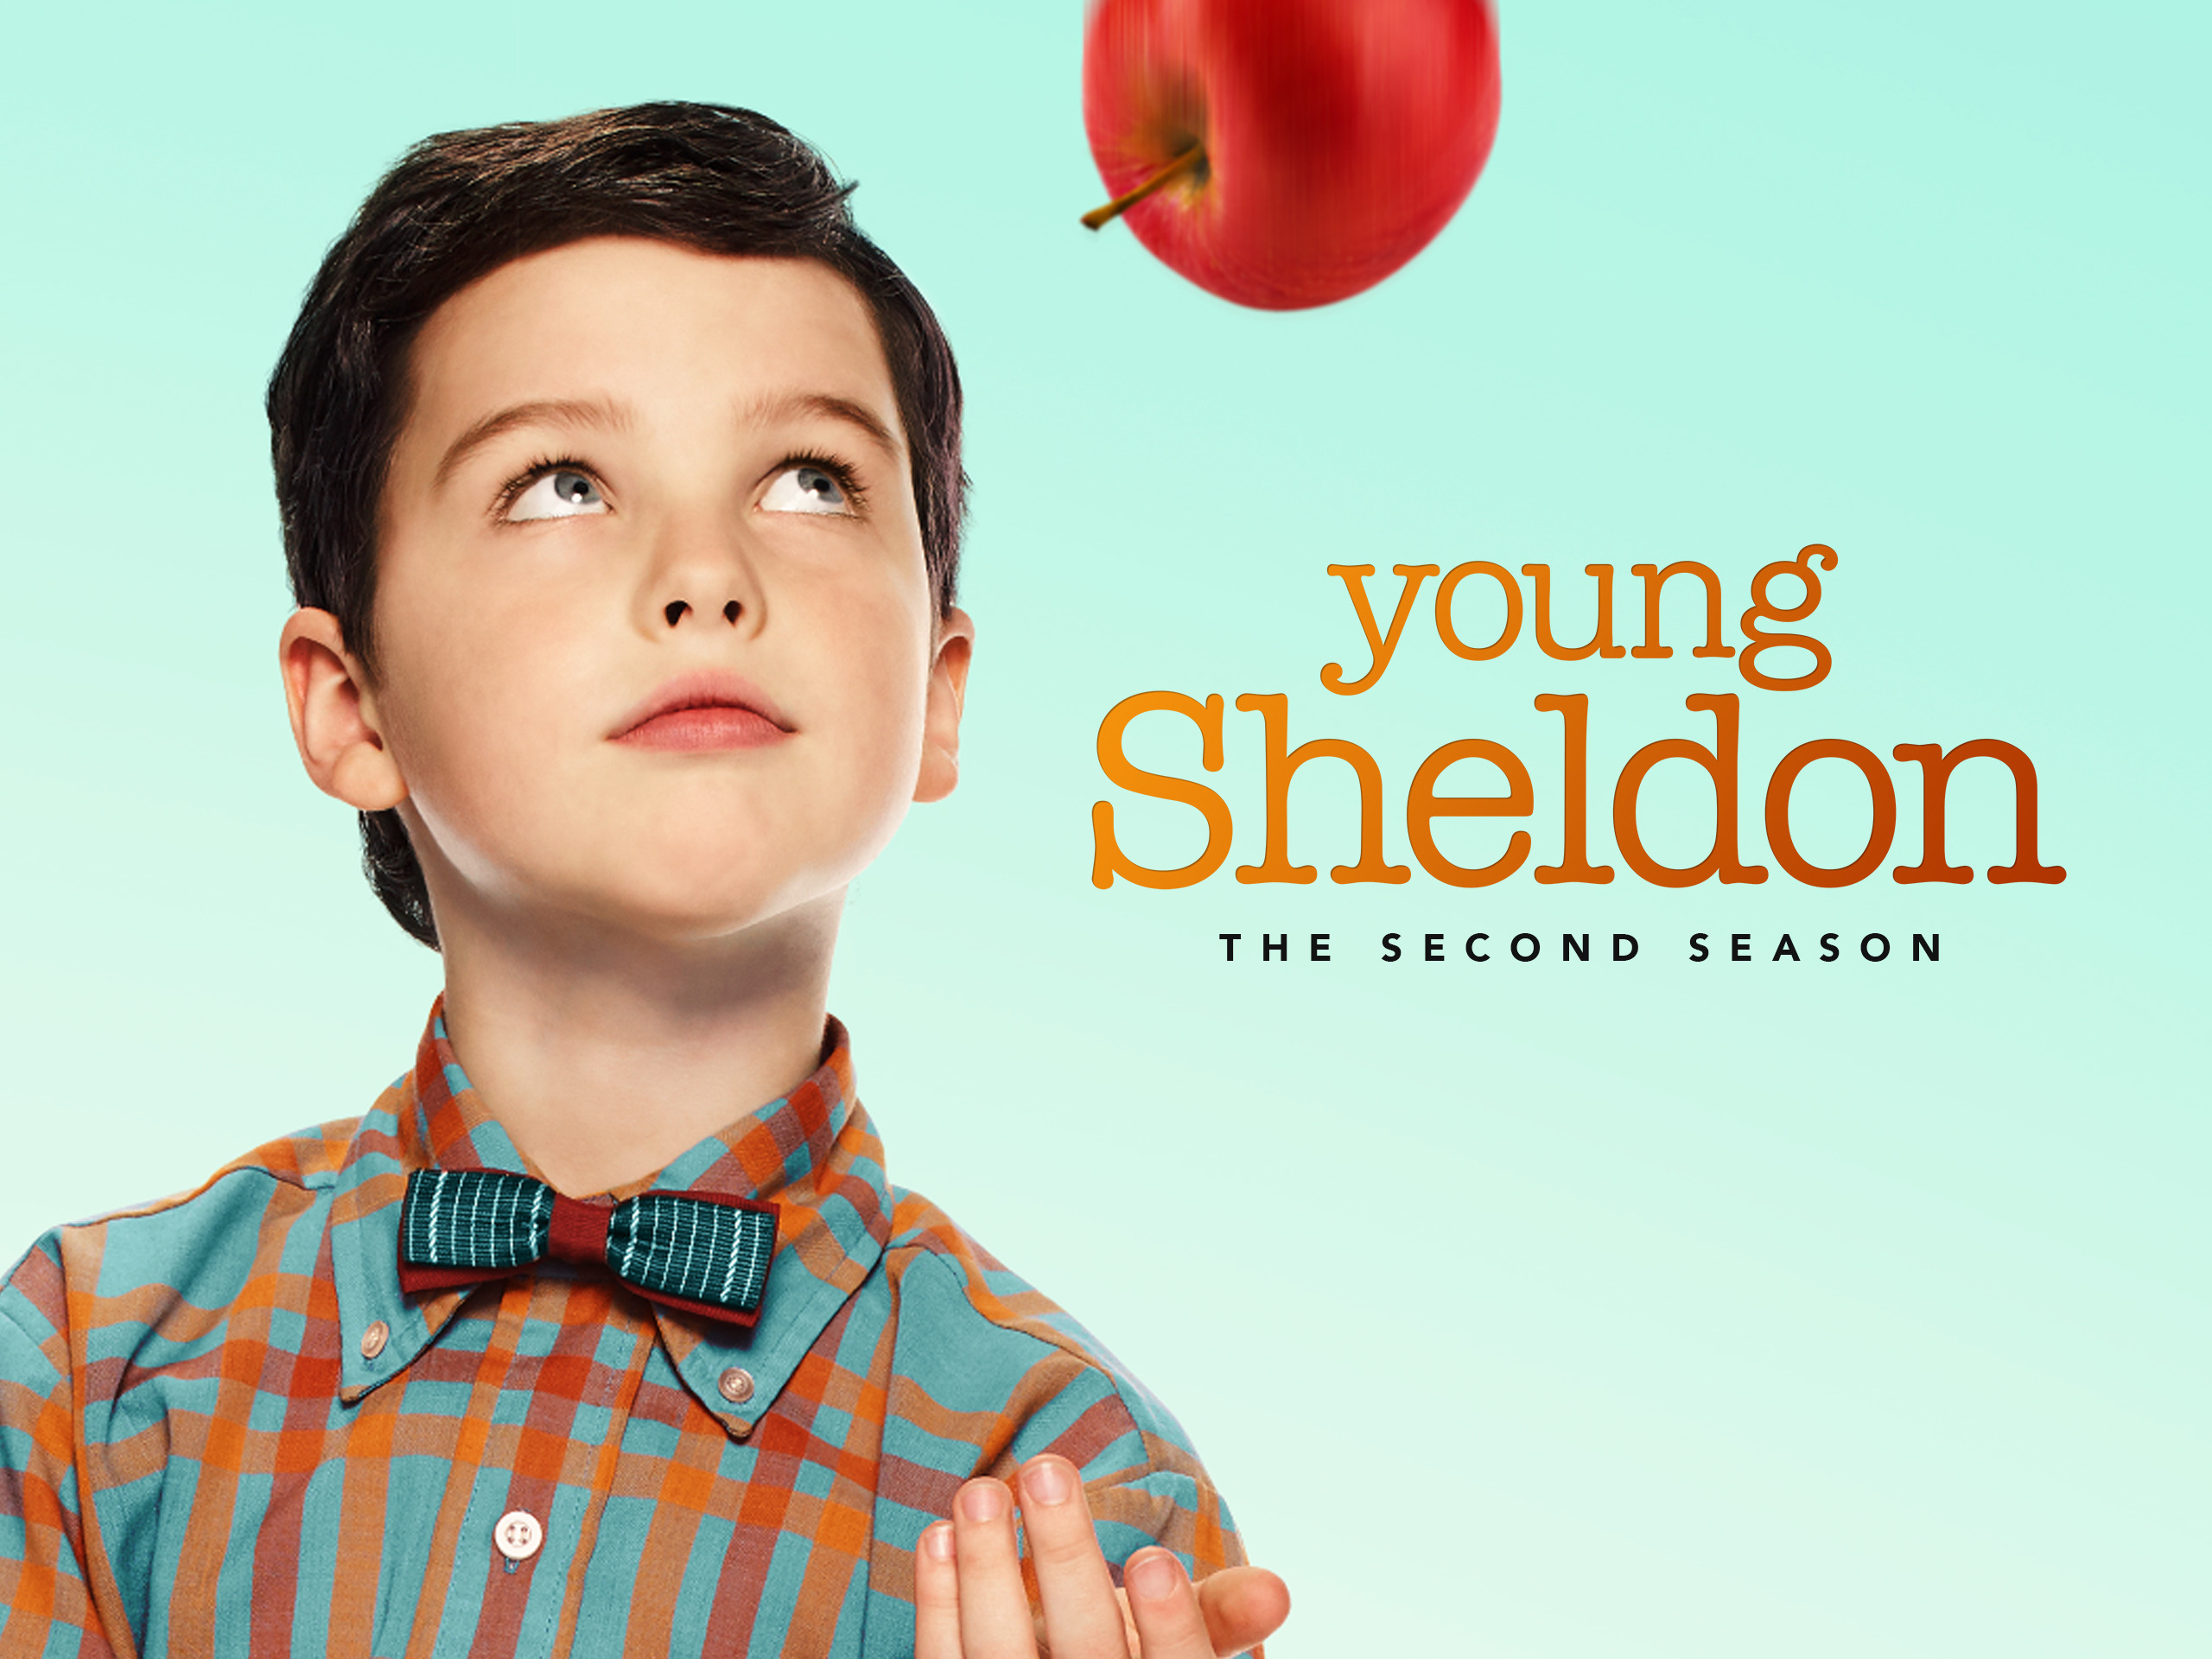 Index of Young Sheldon Season 2